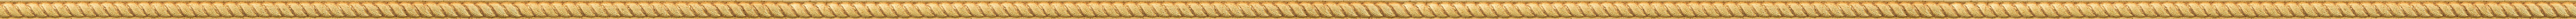 Σκαλιστή λεπτή κορνίζα με φύλλο χρυσού frame